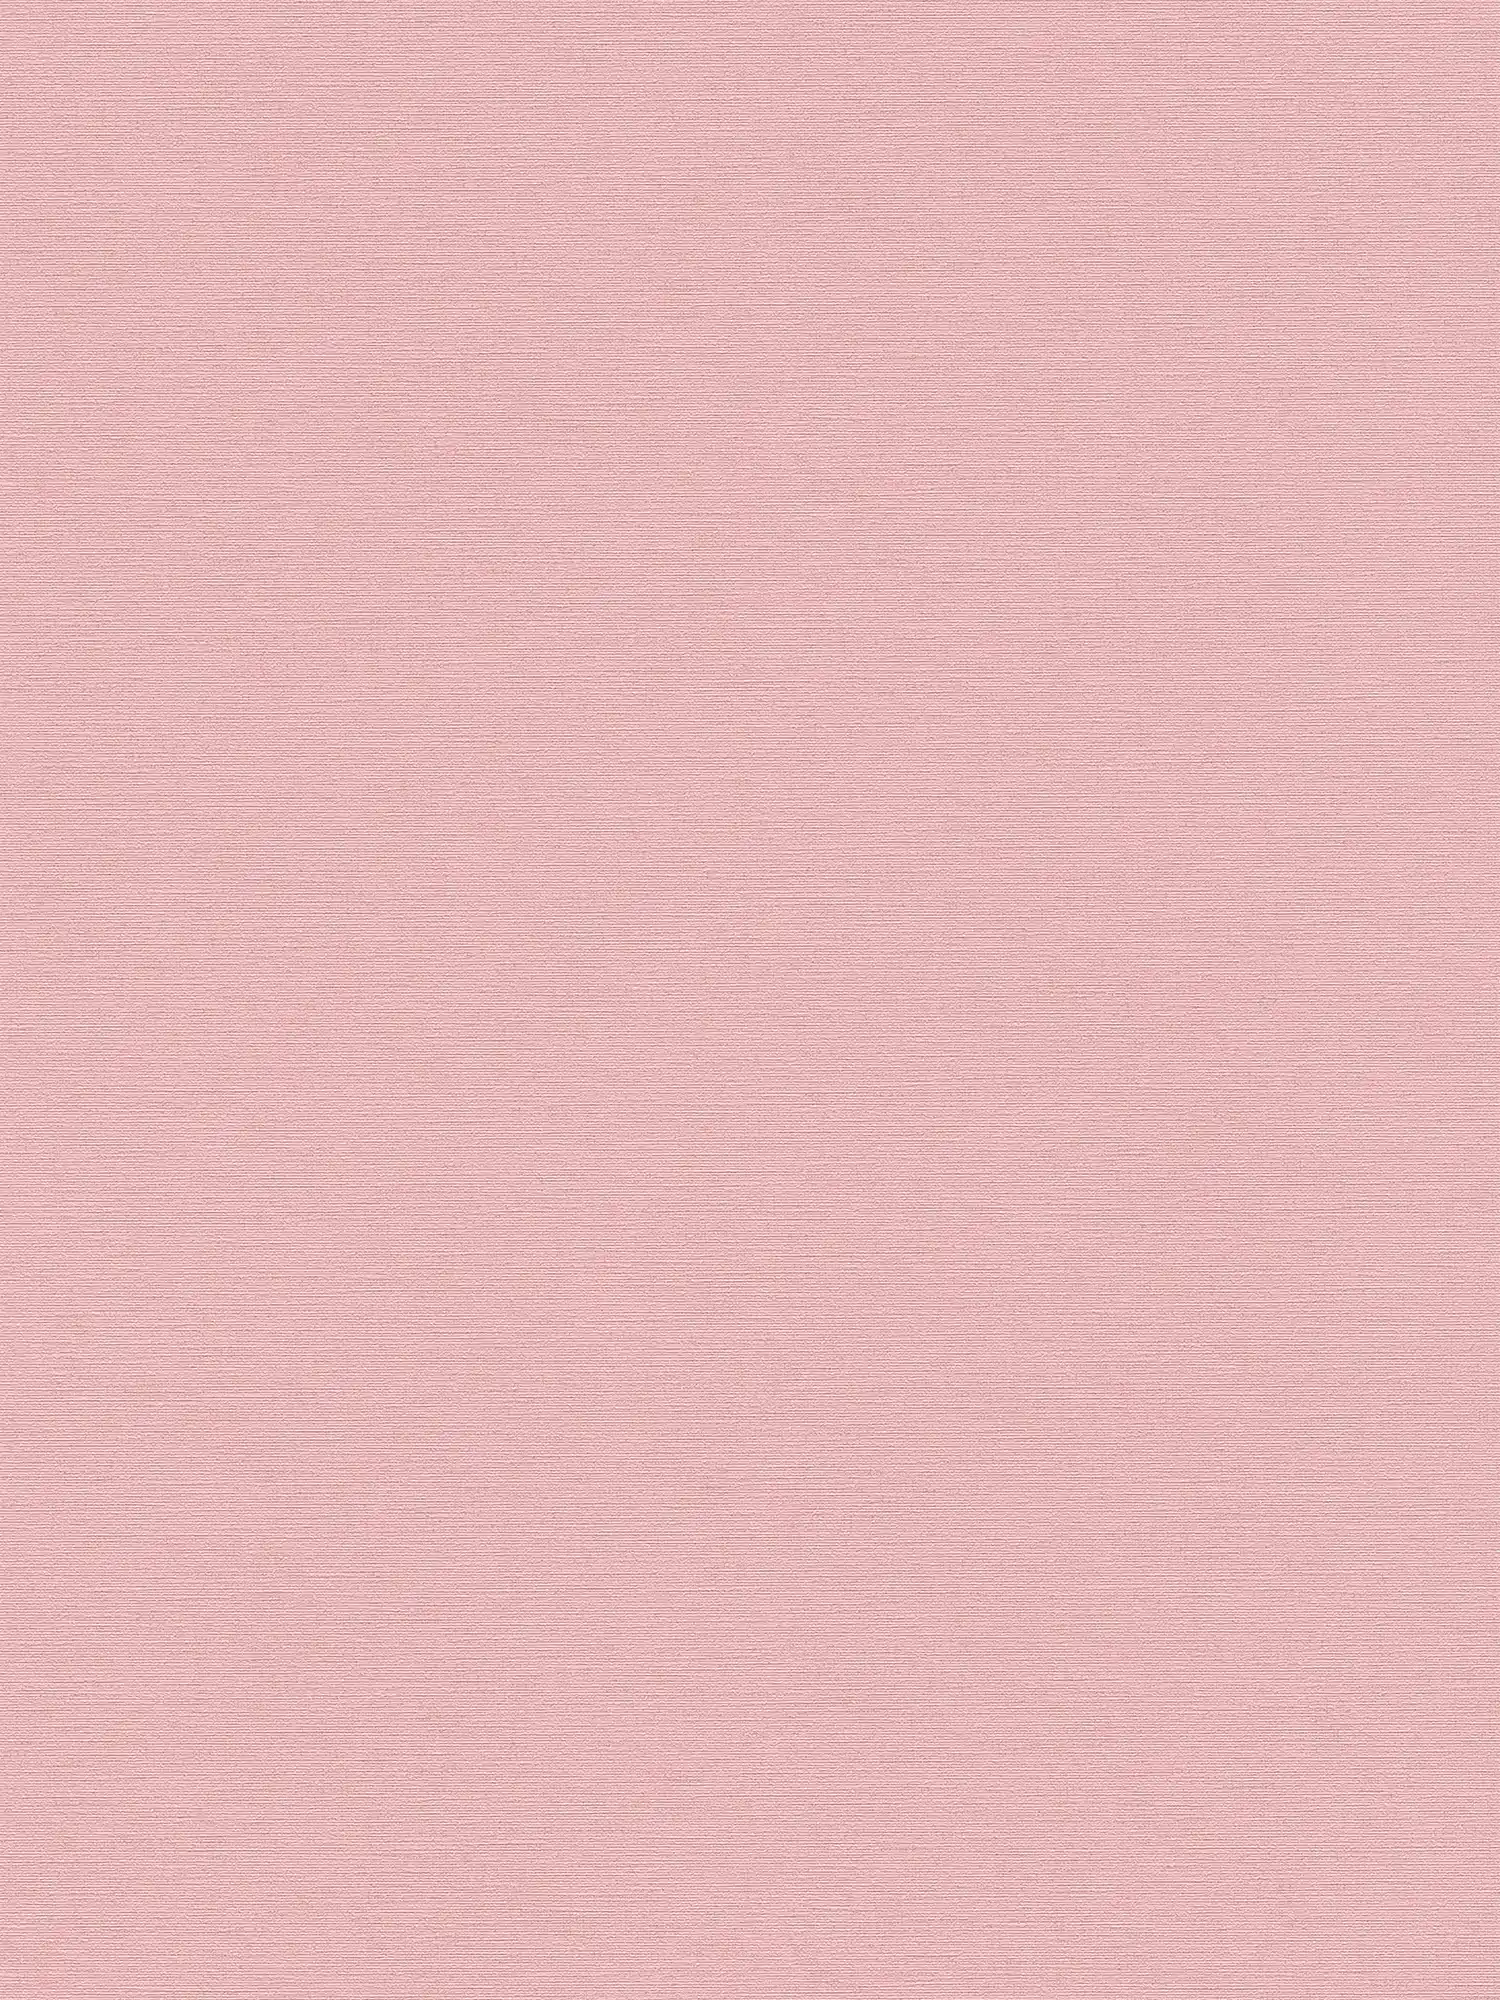 Papel pintado liso no tejido con estructura de lino - rosa
